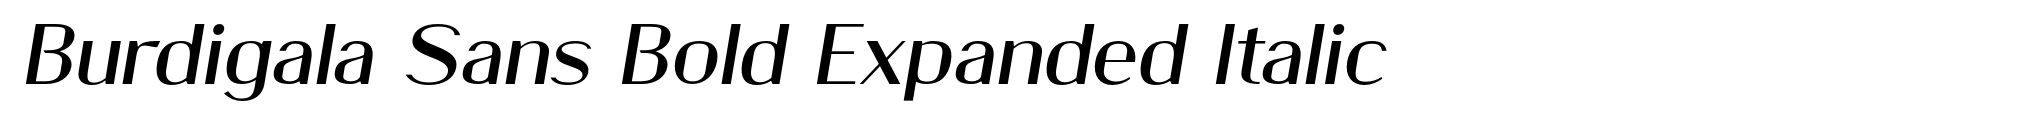 Burdigala Sans Bold Expanded Italic image